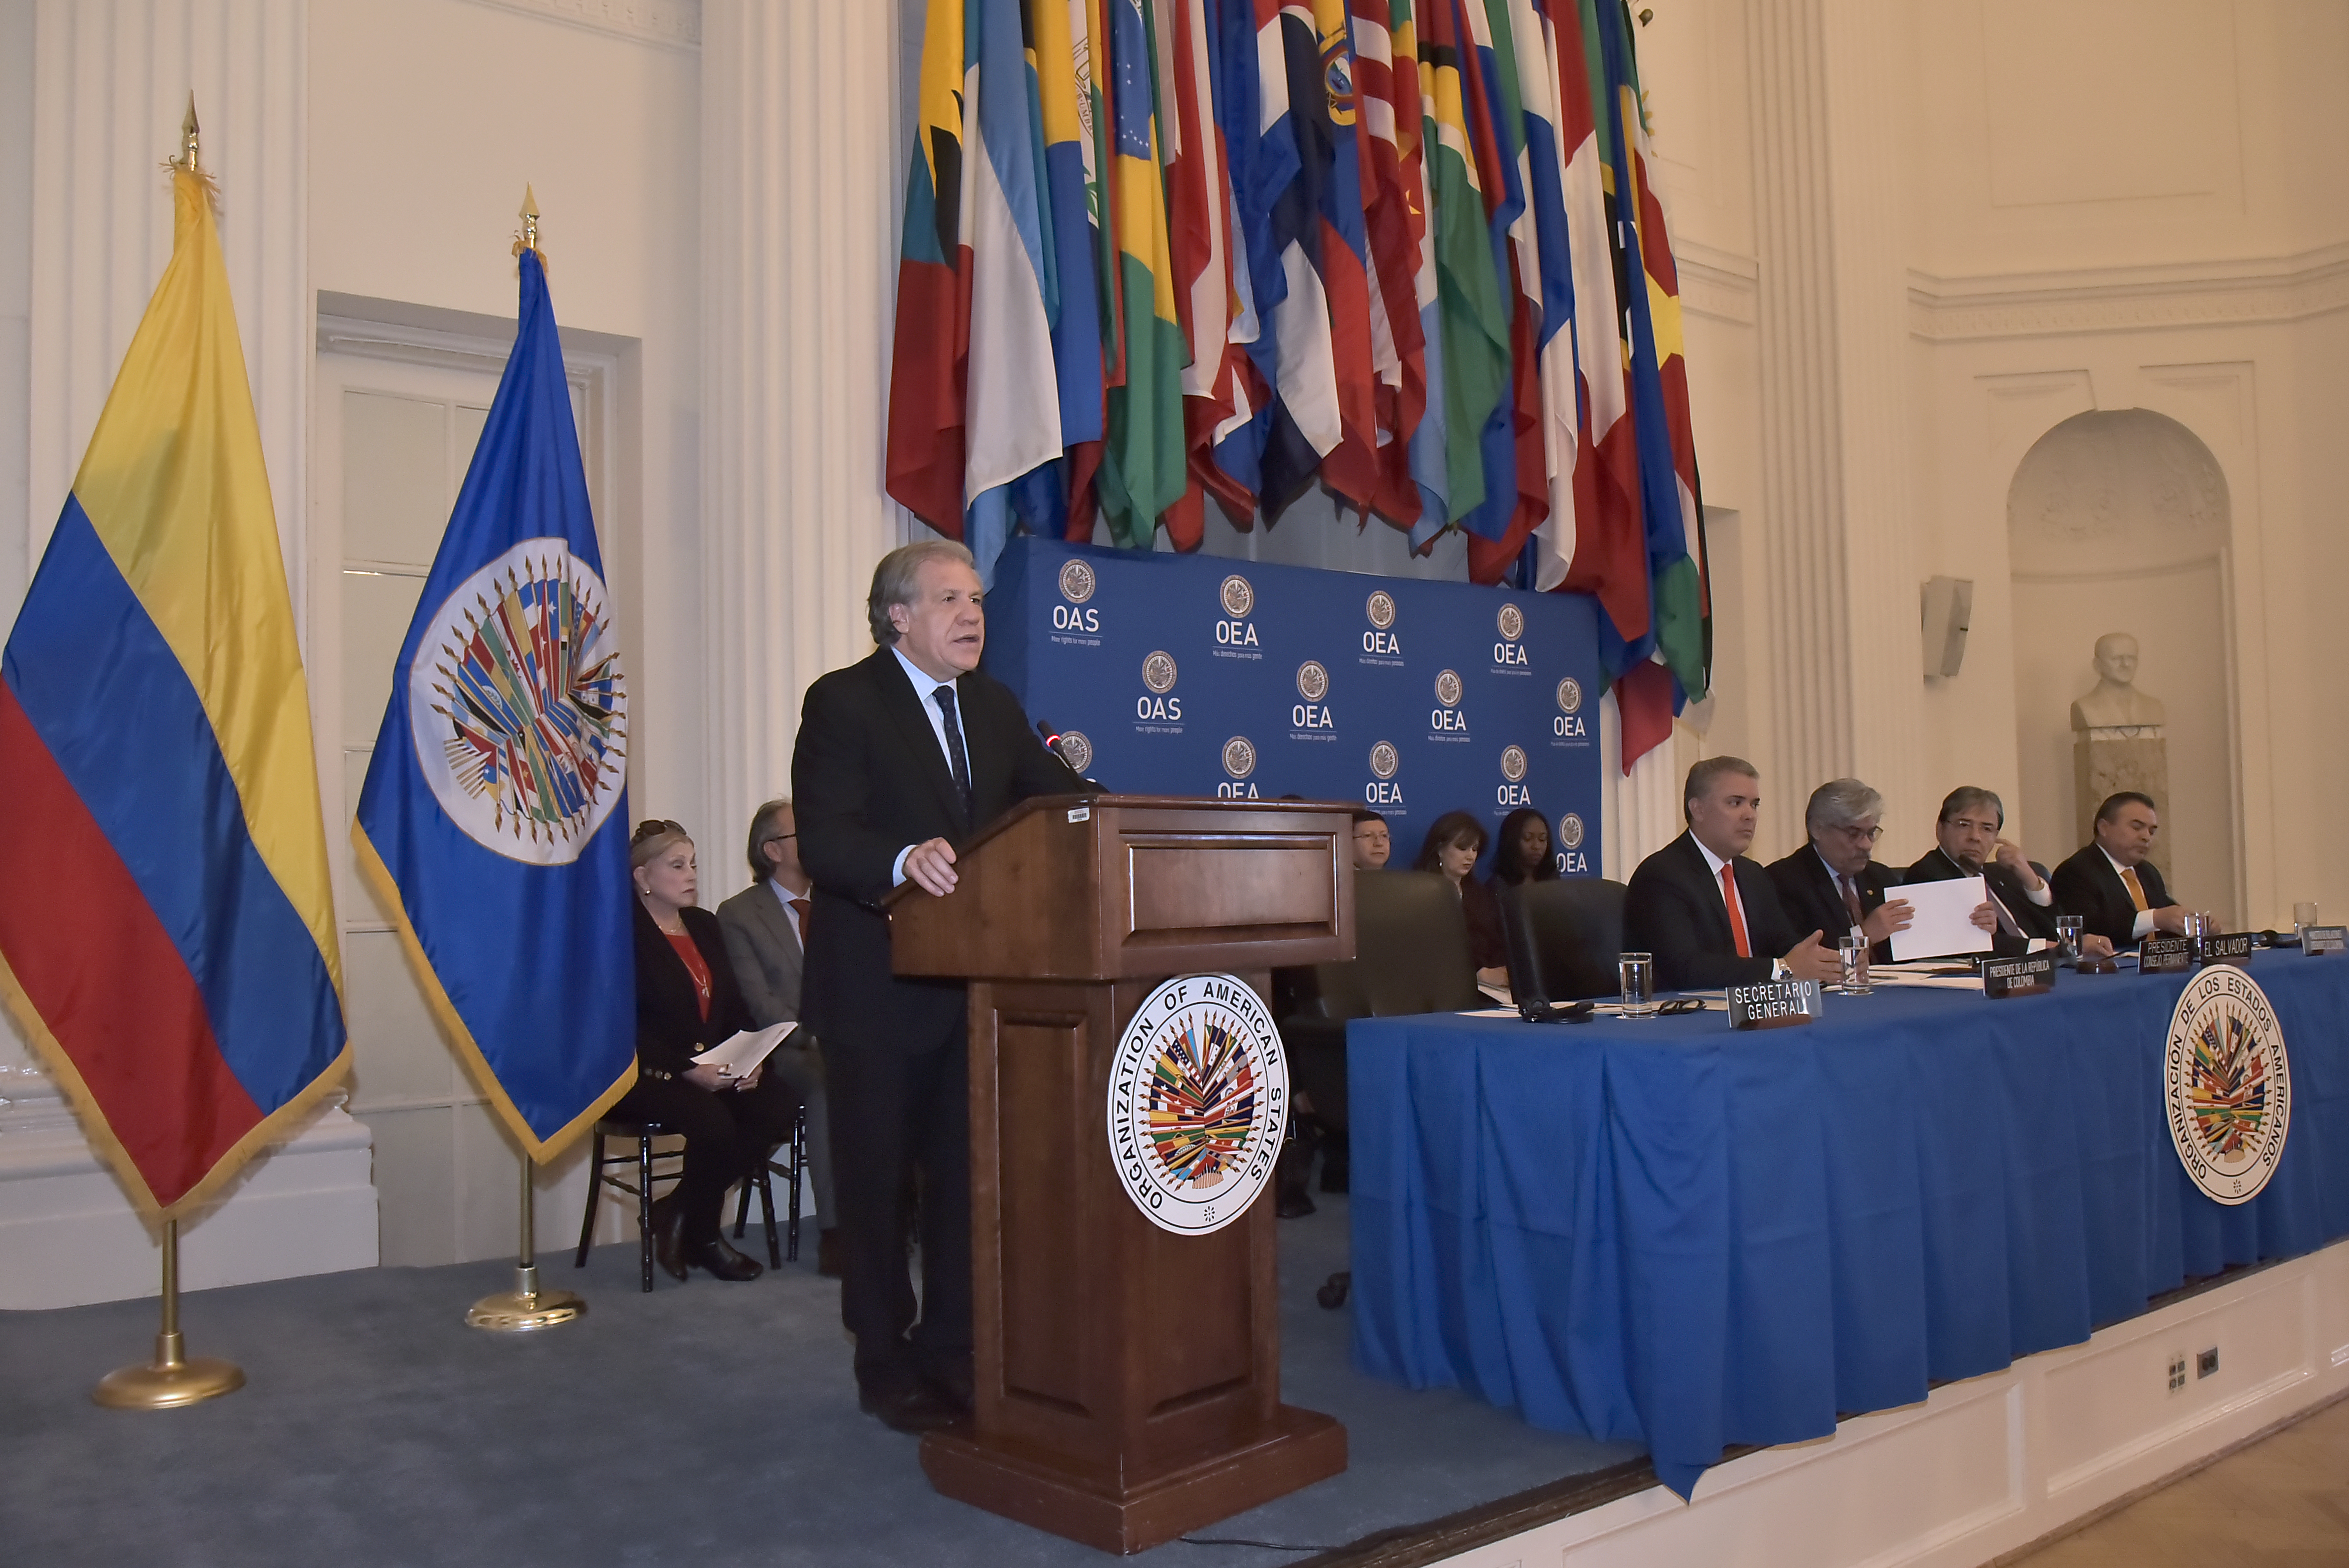 Palabras del Secretario General de la Organización de Estados Americanos, Luis Almagro, en la sesión protocolar del Consejo Permanente